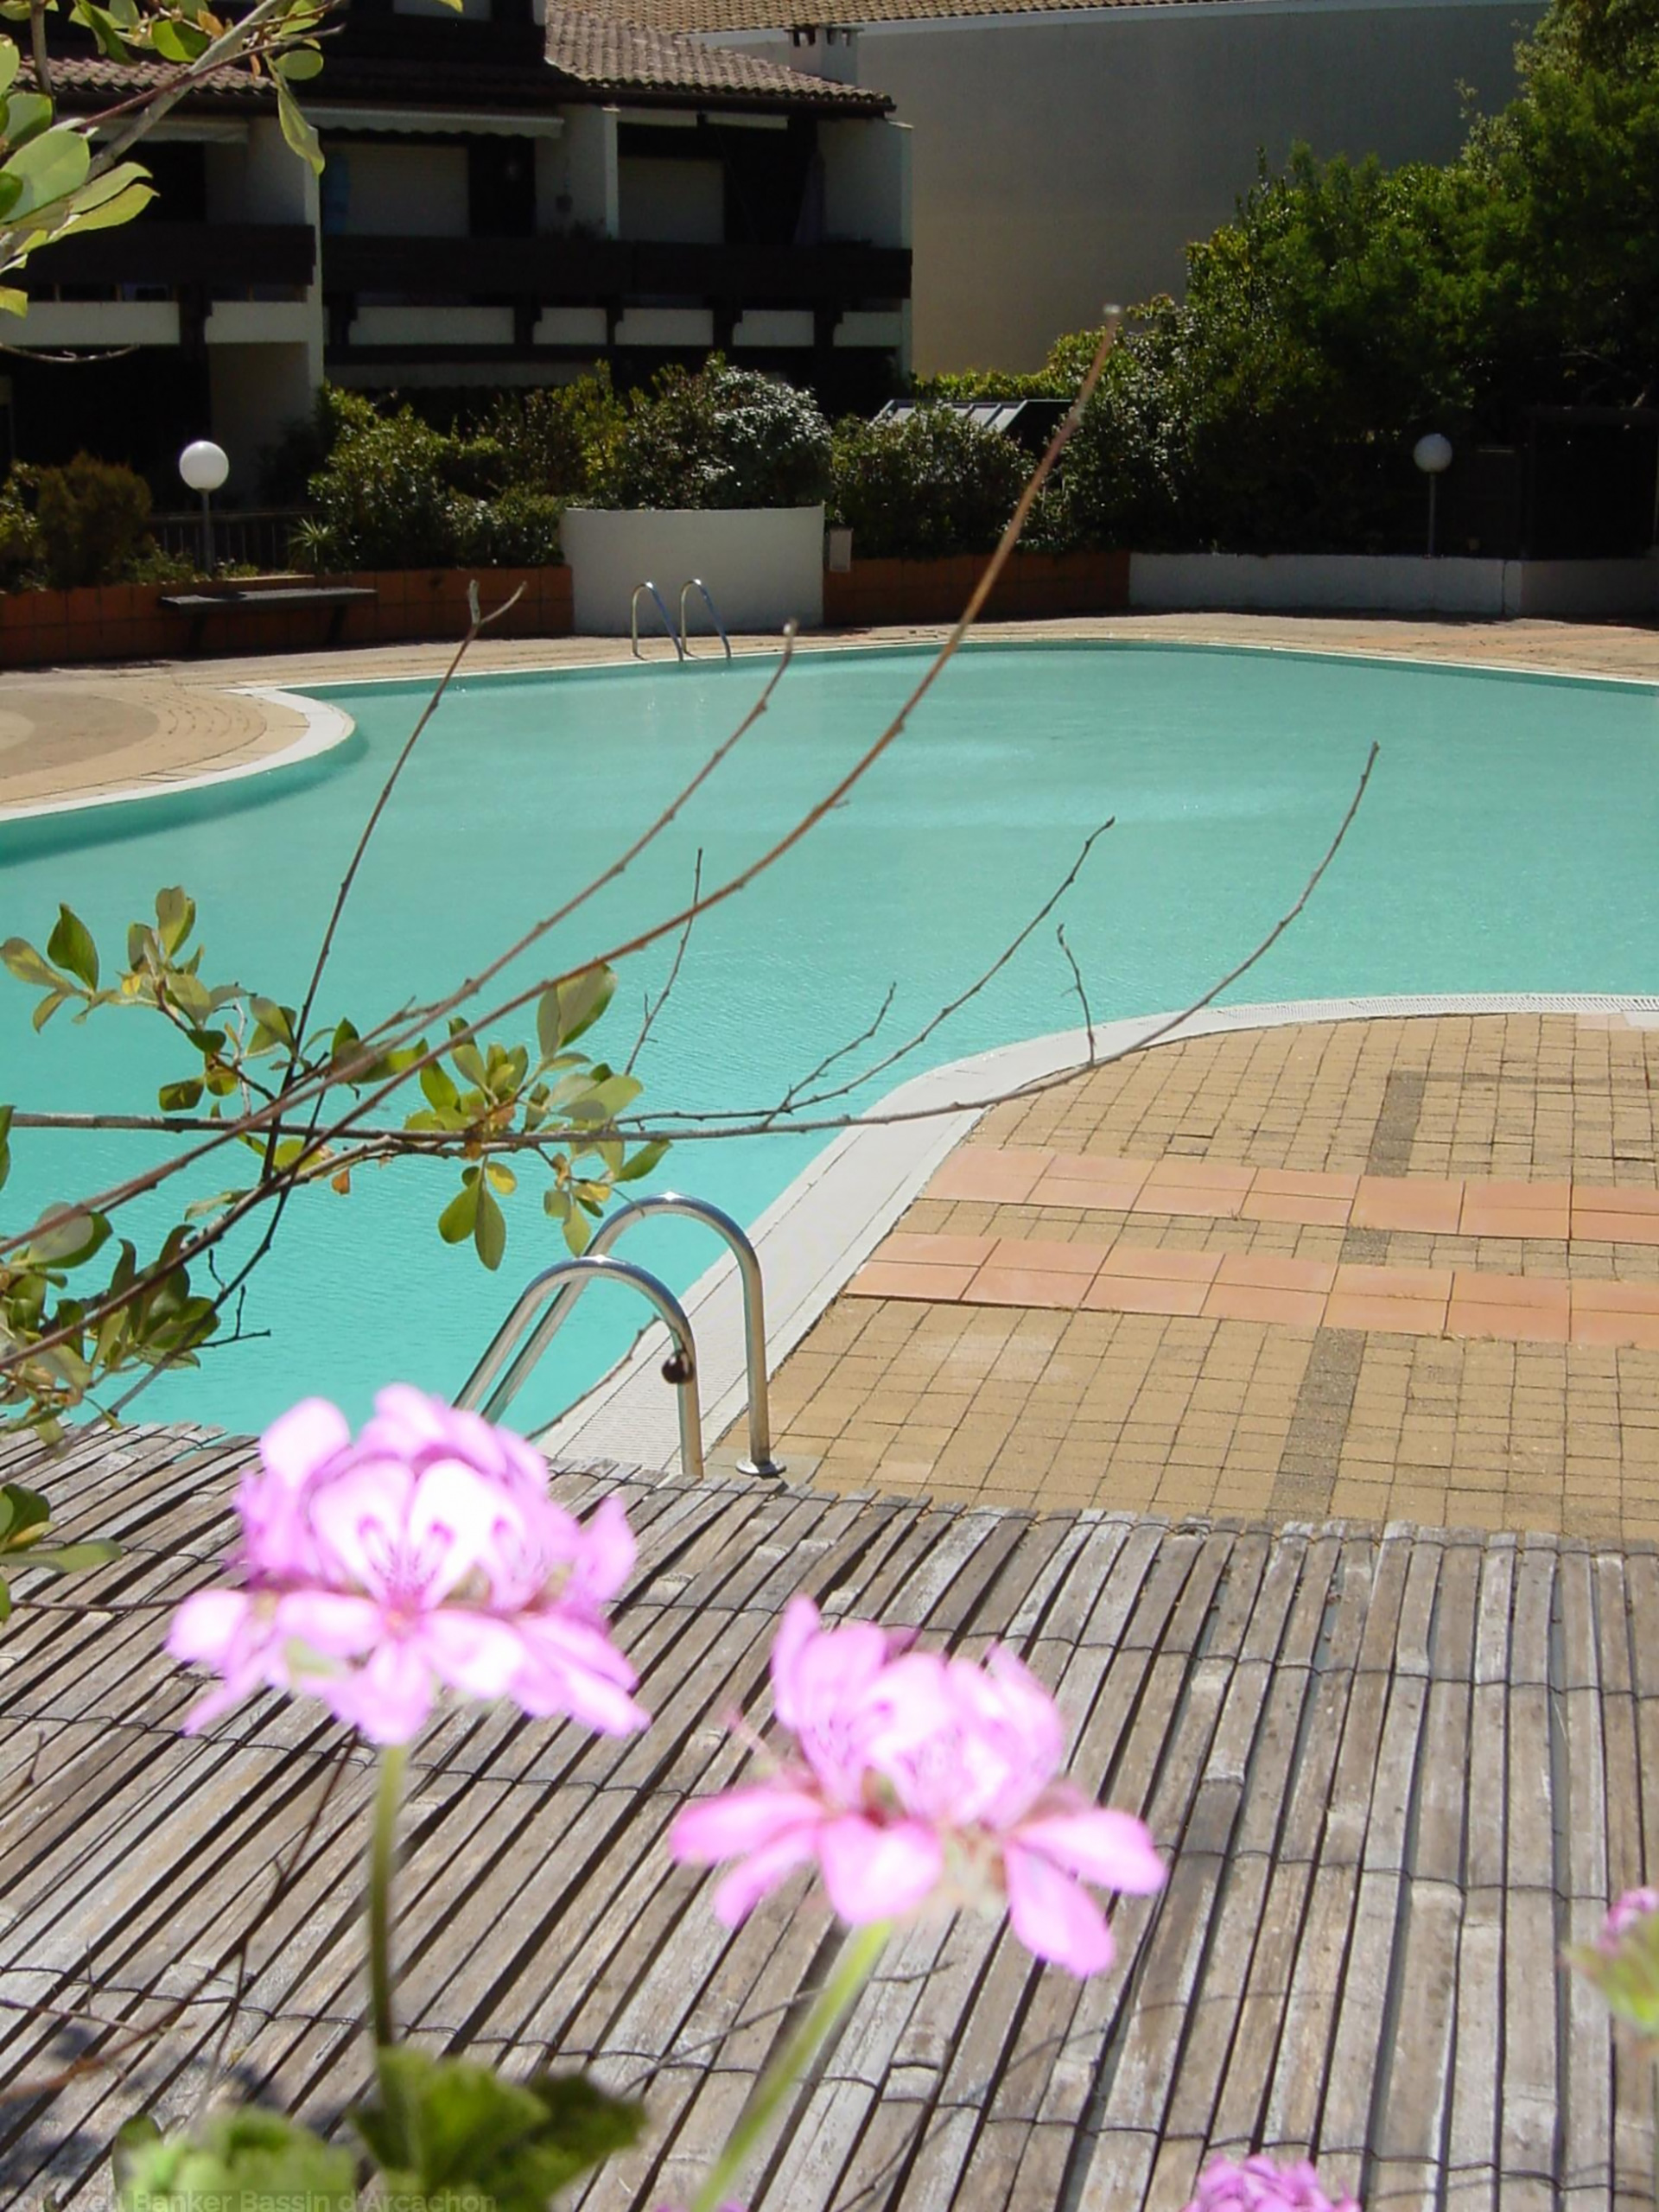 Location de vacances sur le cap-ferret dans résidence avec piscine